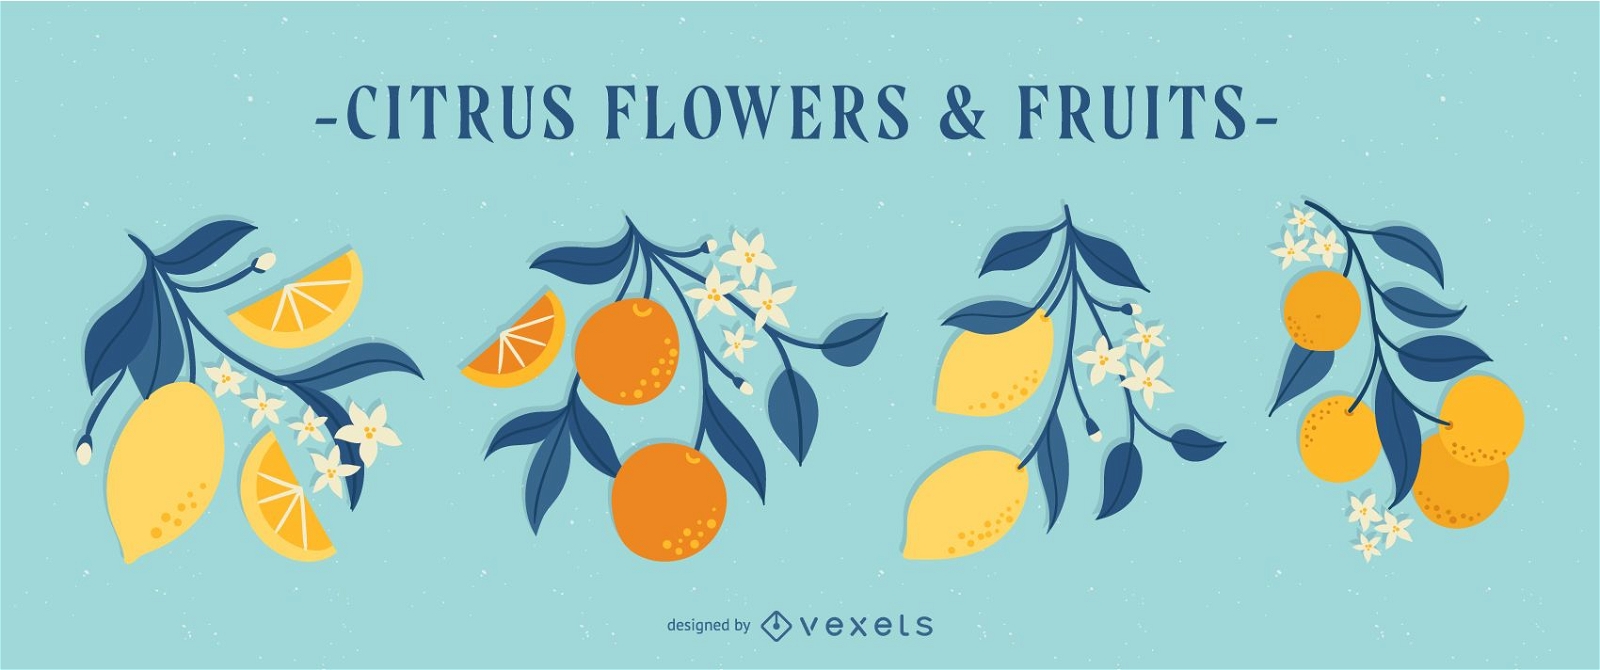 Fr?hlings-Zitrusblumen- und -frucht-Illustrationssatz